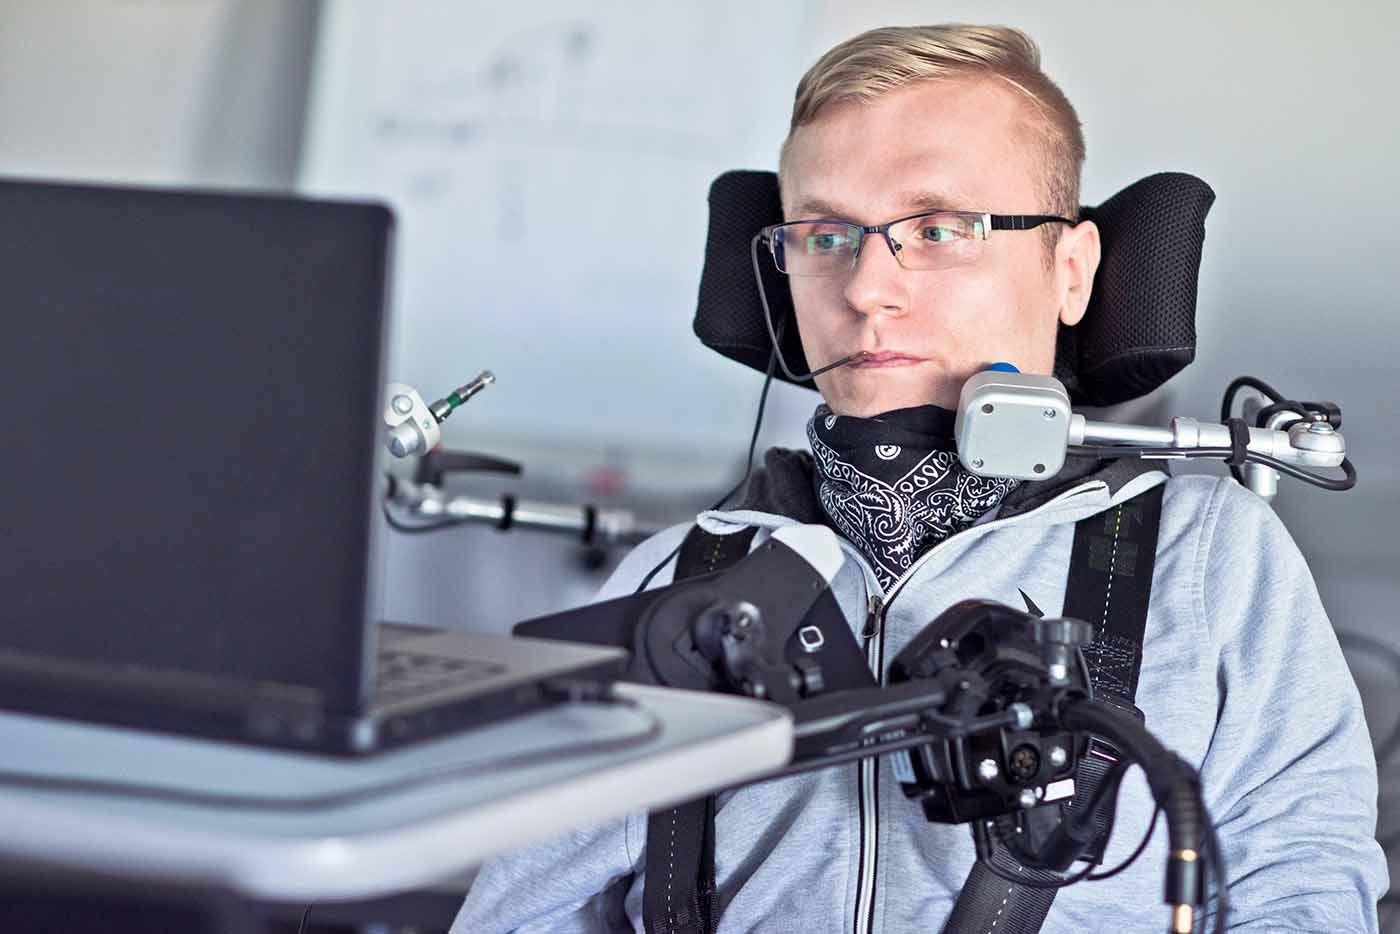 En la imagen aparece una persona con discapacidad física severa frente a un ordenador portátil. A este tipo de usuarios es que beneficia la interfaz de Navegación por sonidos de inSuit.